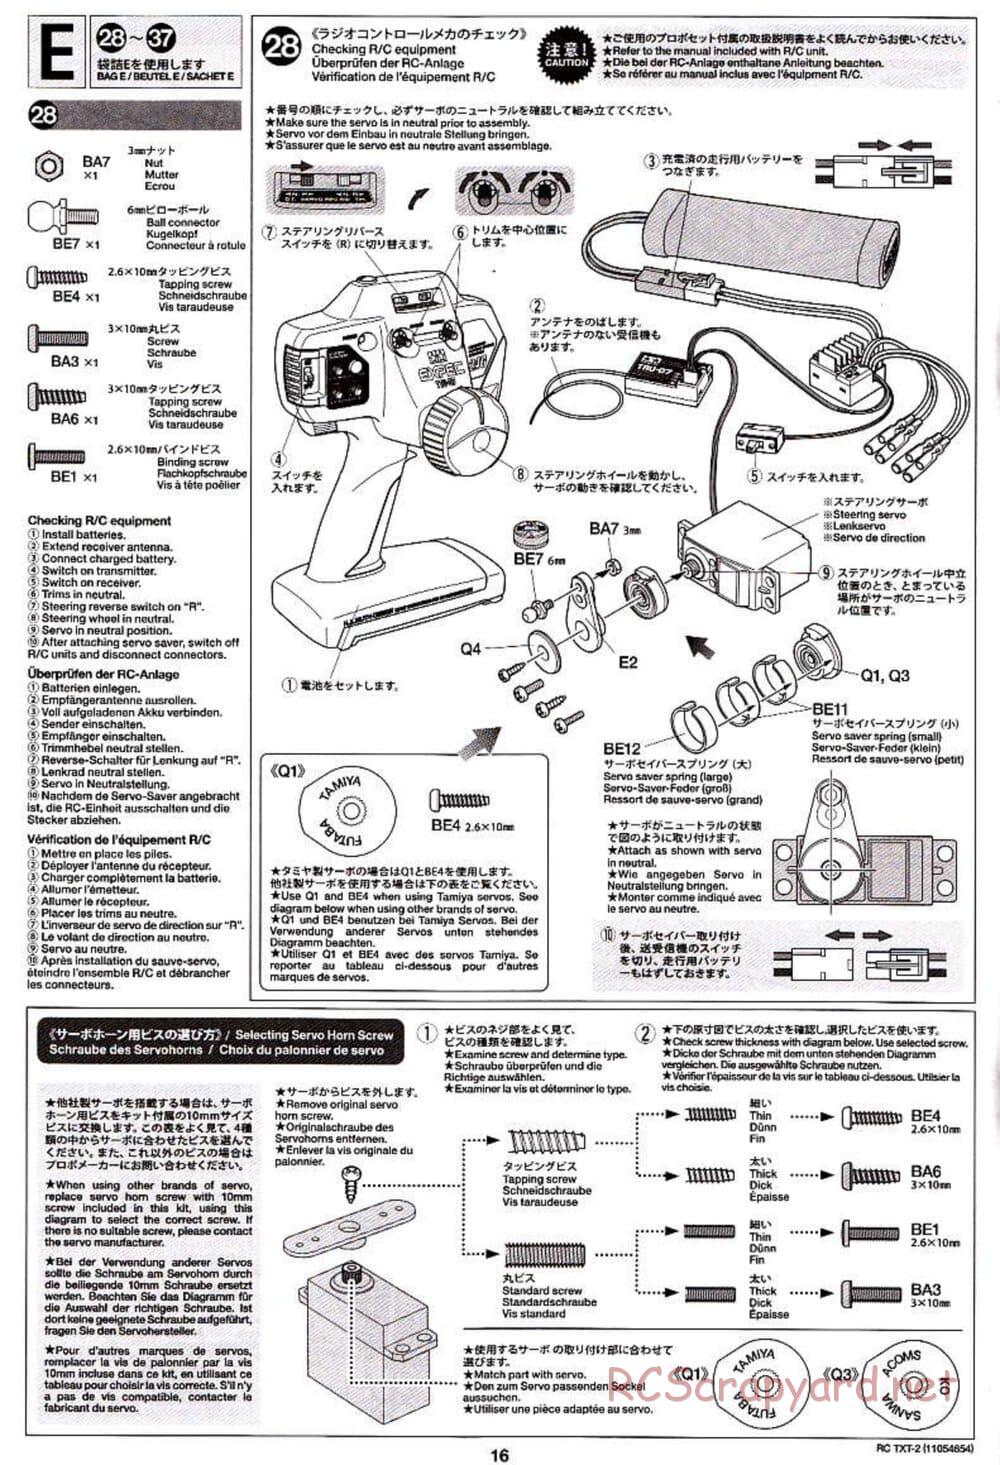 Tamiya - TXT-2 Chassis - Manual - Page 16